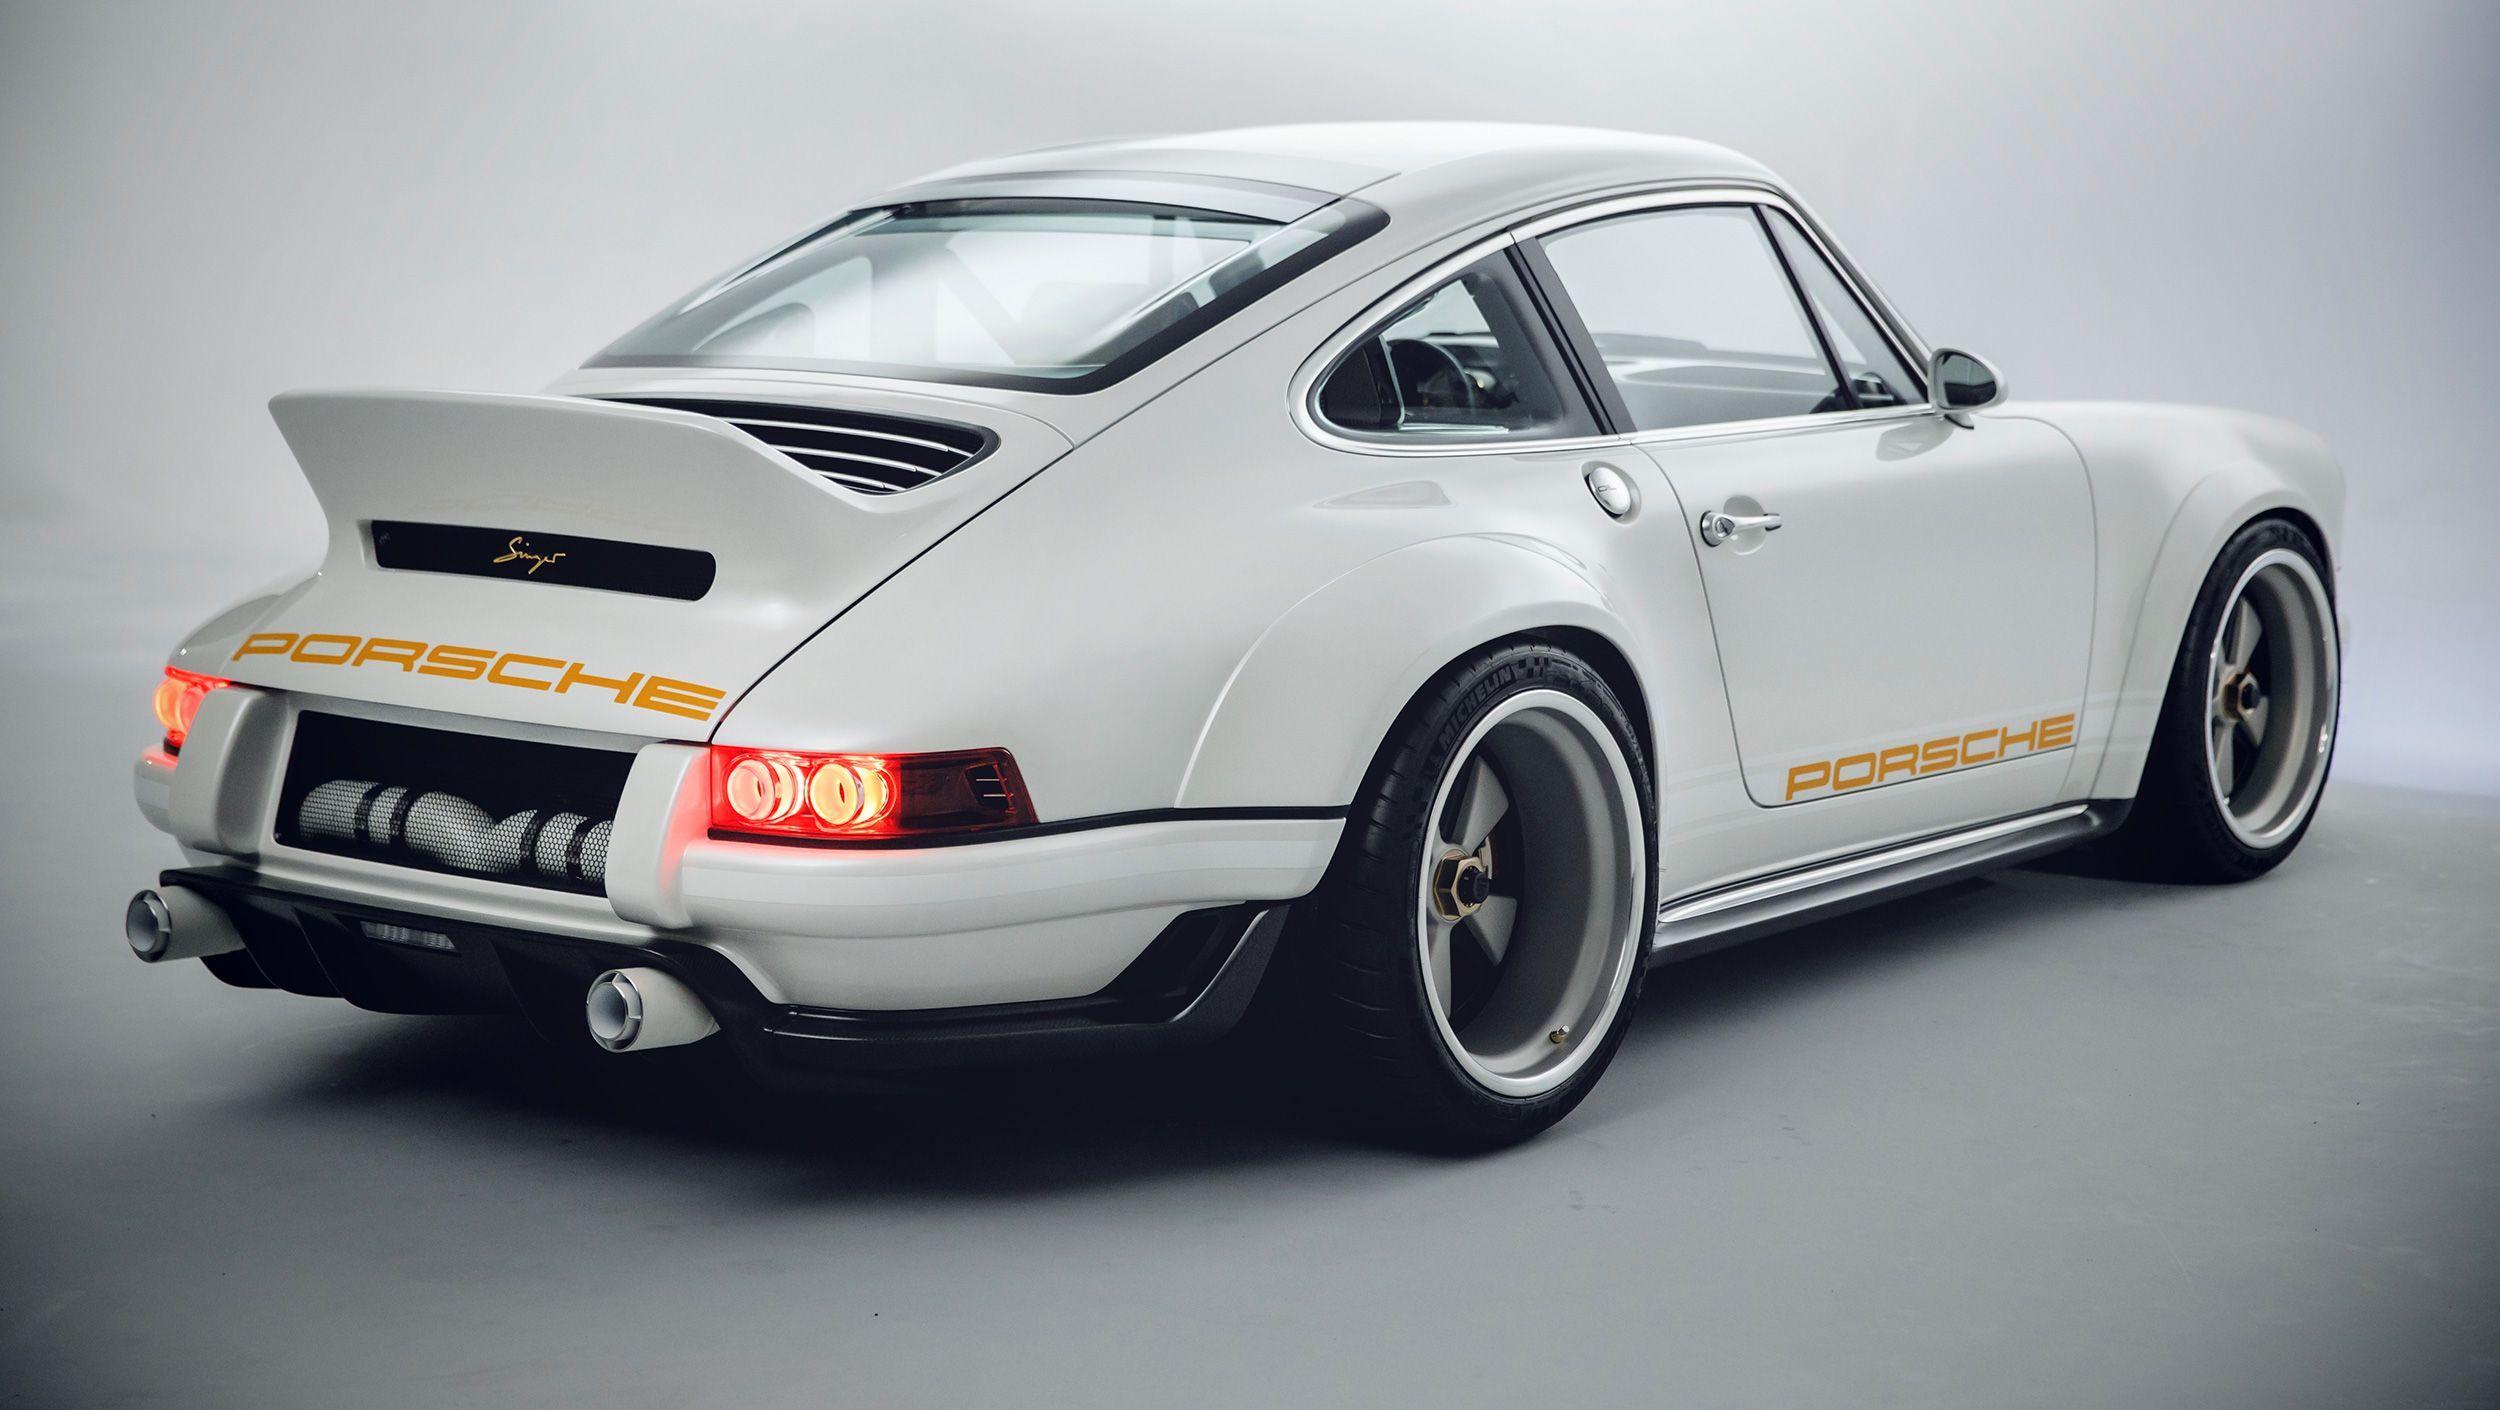 Singer Porsche Wallpapers Top Free Singer Porsche Backgrounds Wallpaperaccess